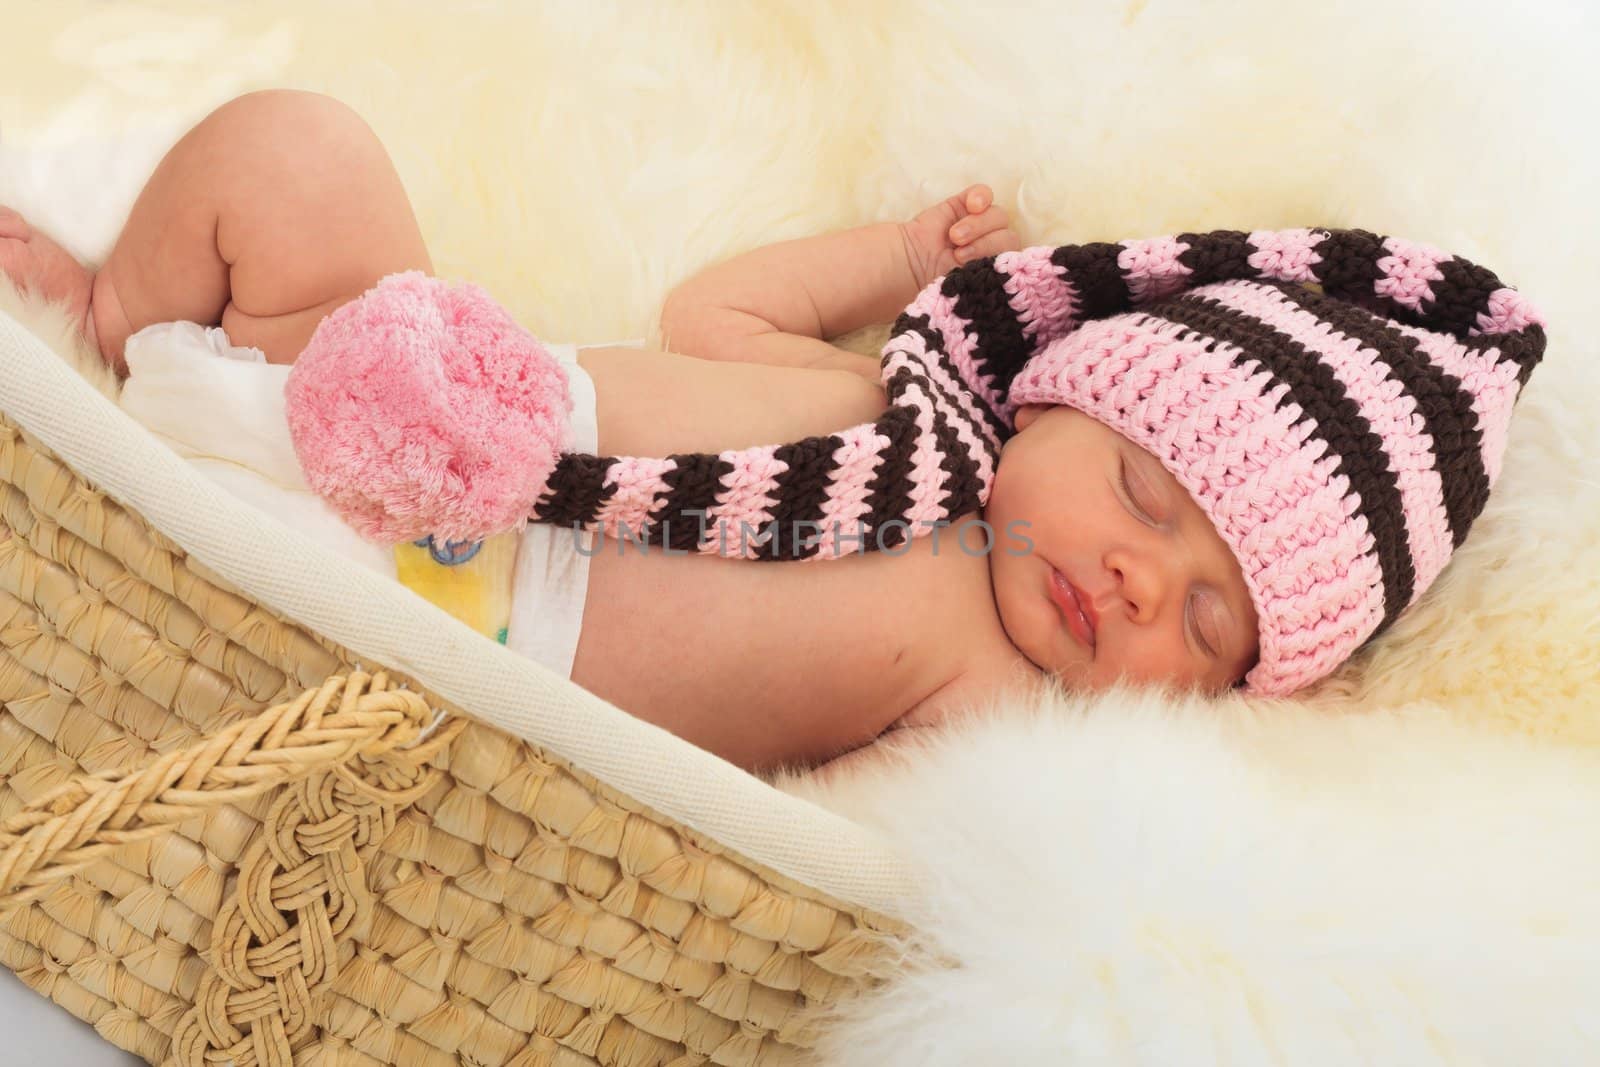 infant sleeping on a white sheepskin in a wicker basket.